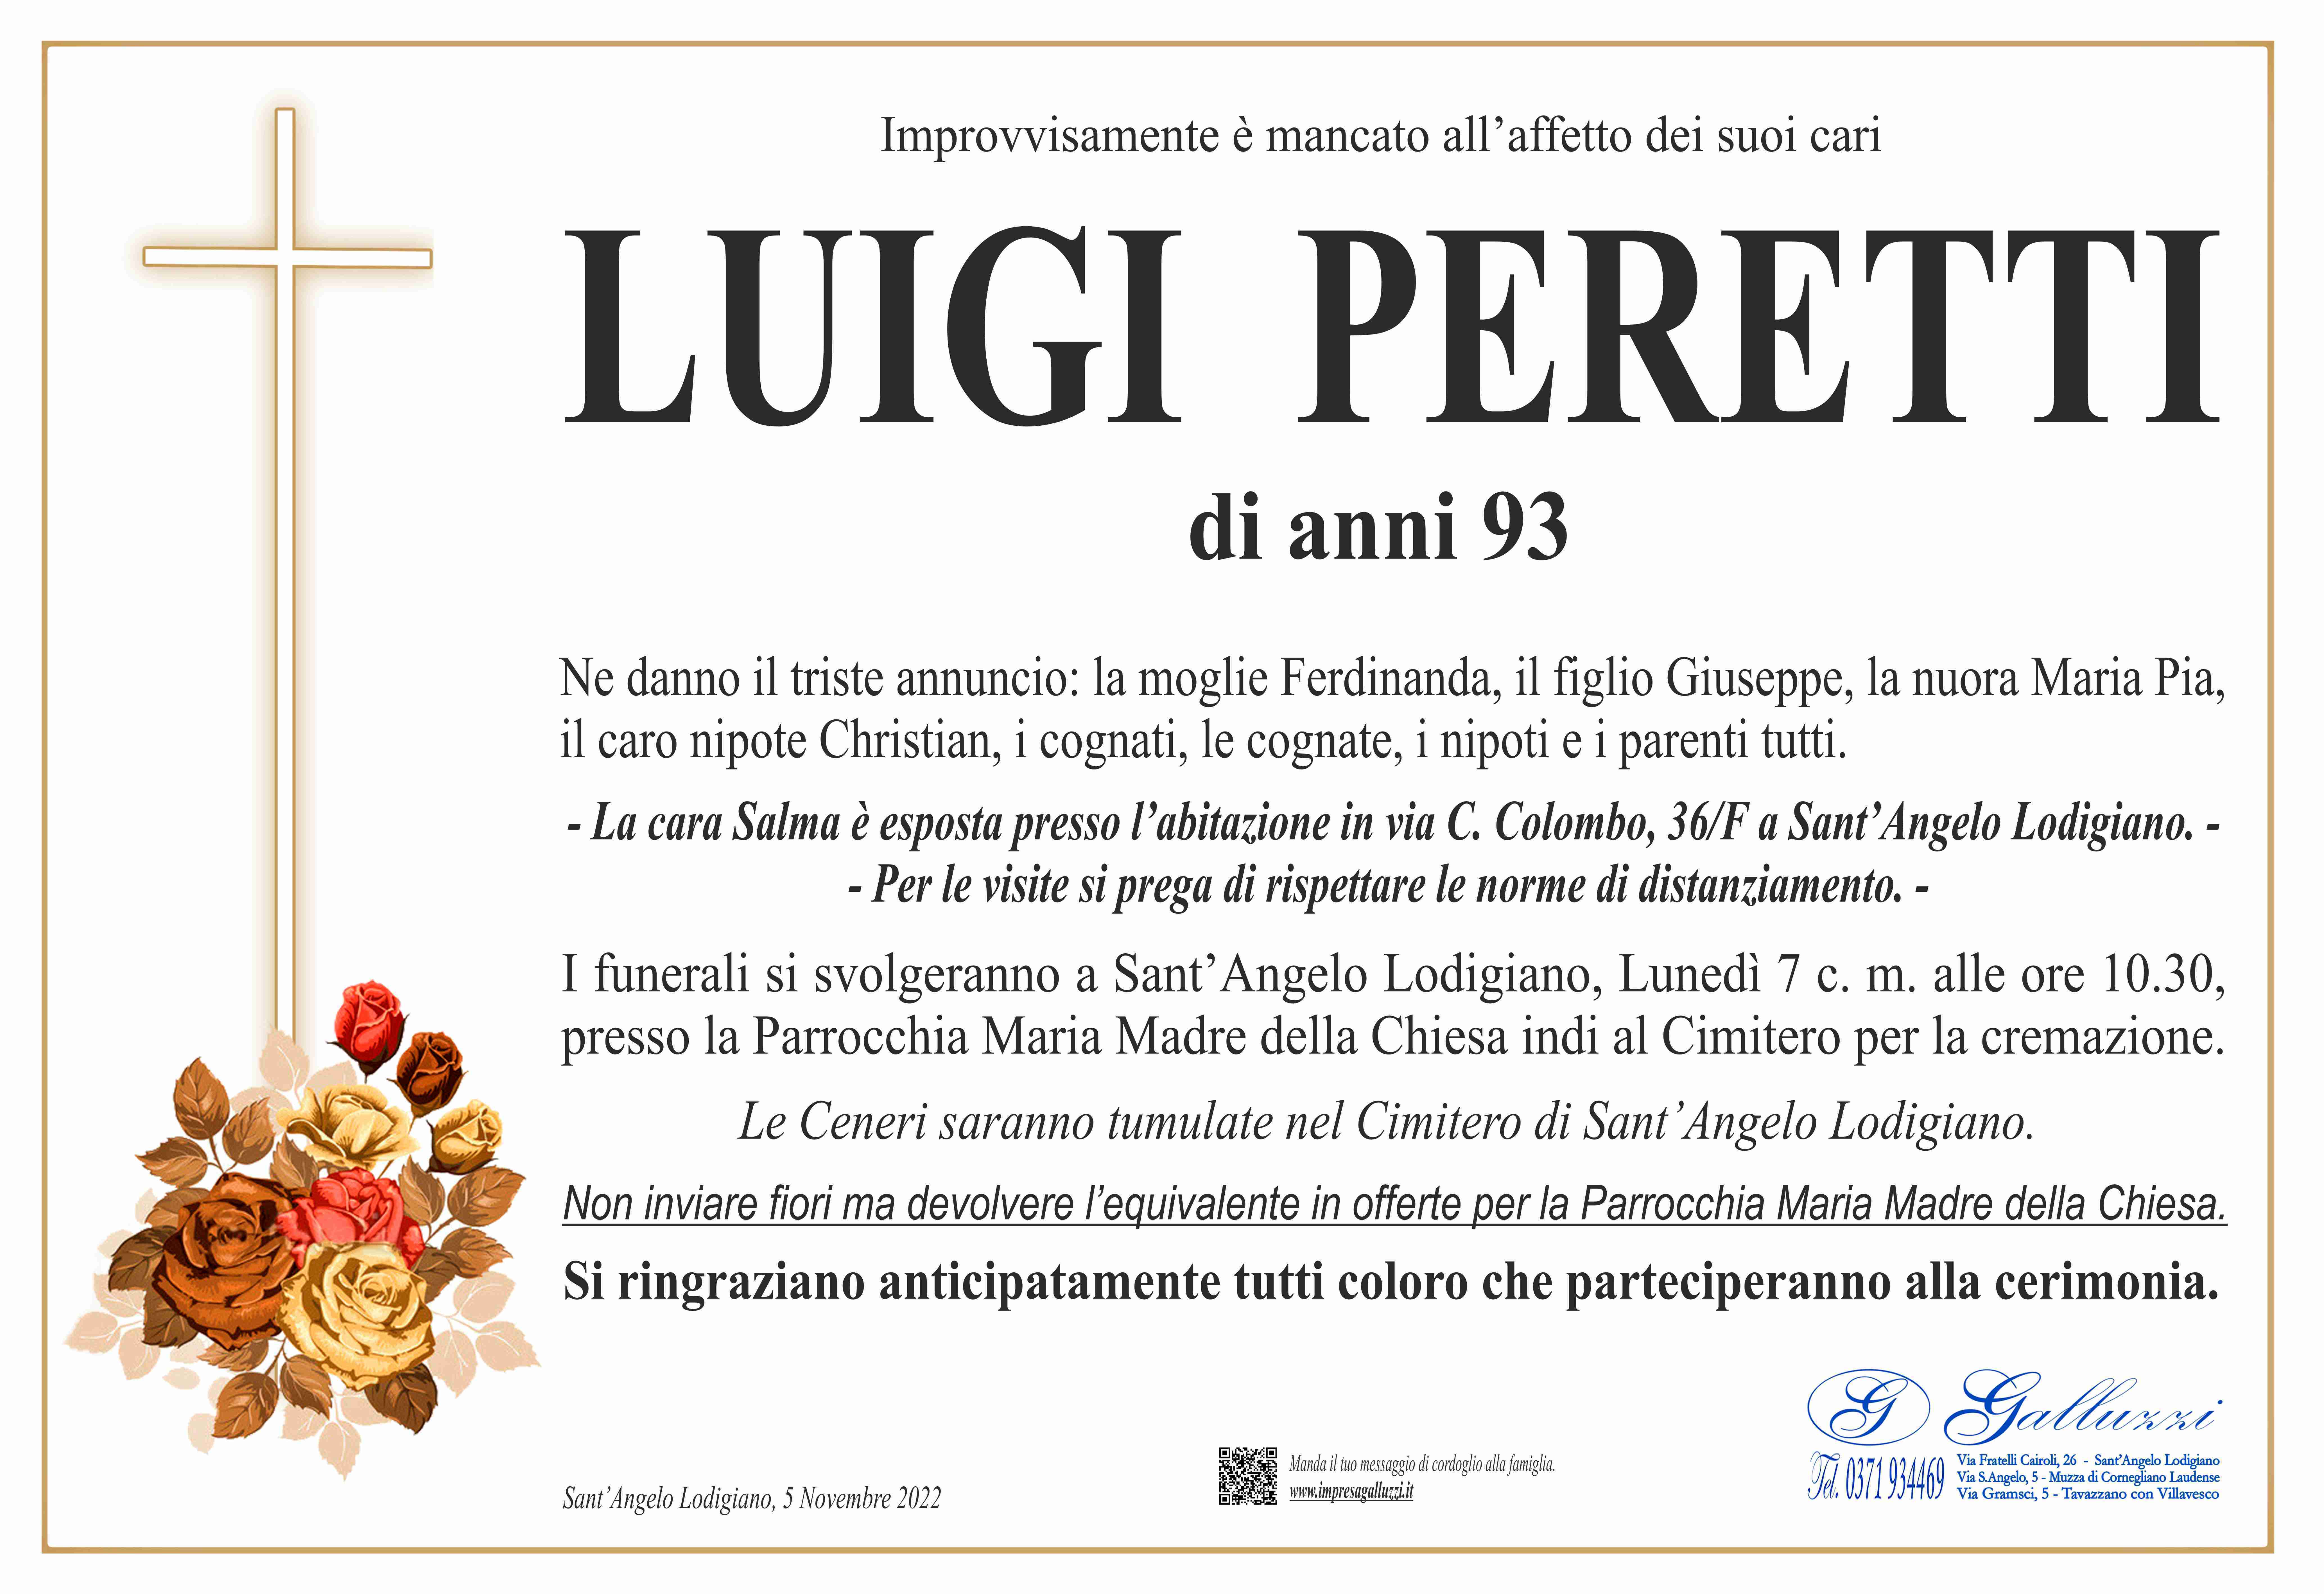 Luigi Peretti